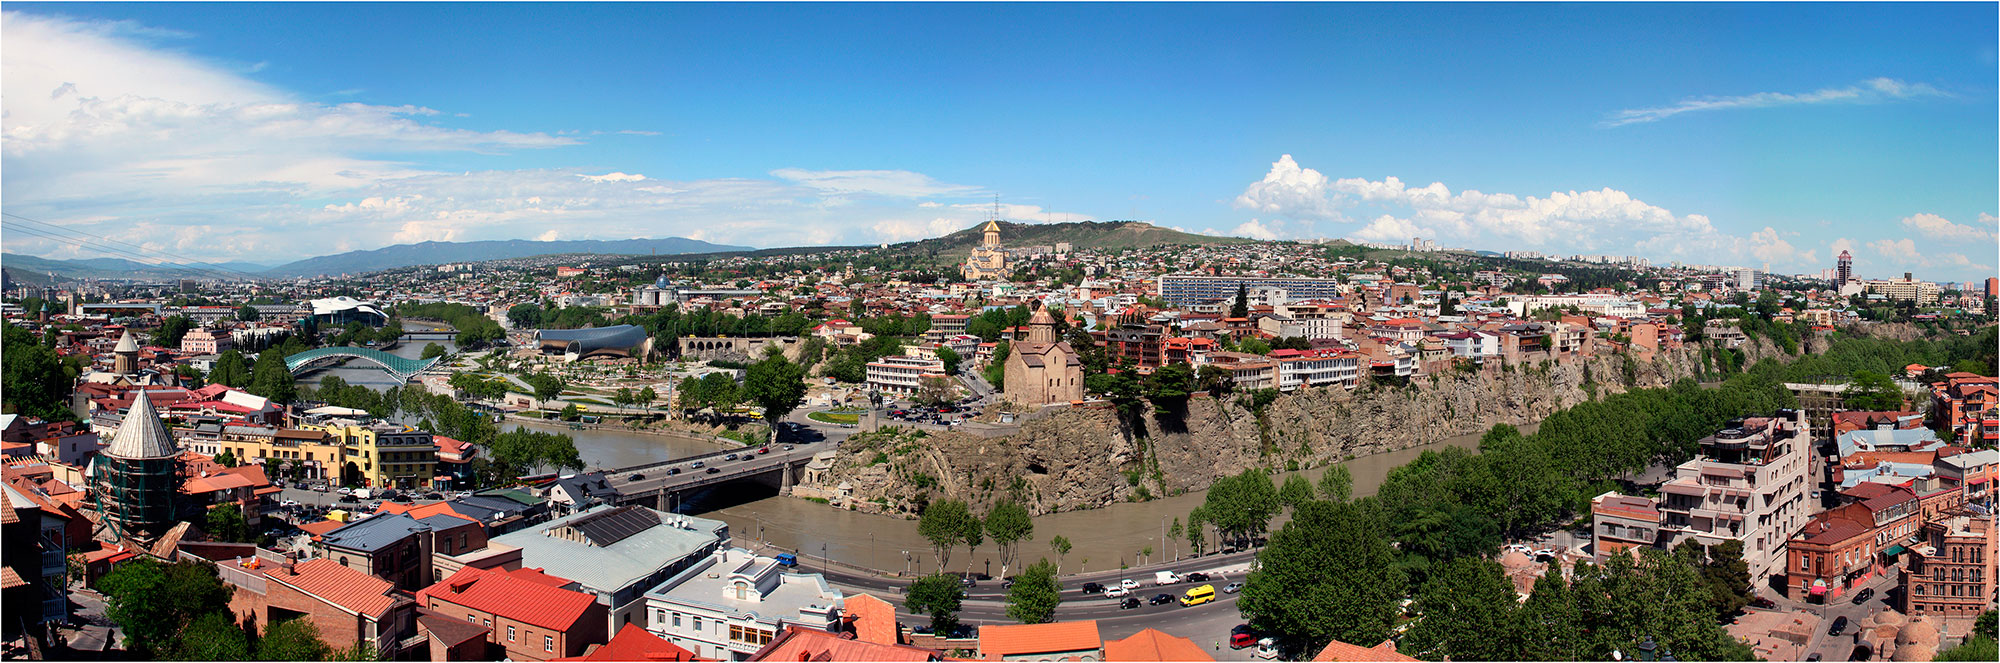 Тбилиси панорама города